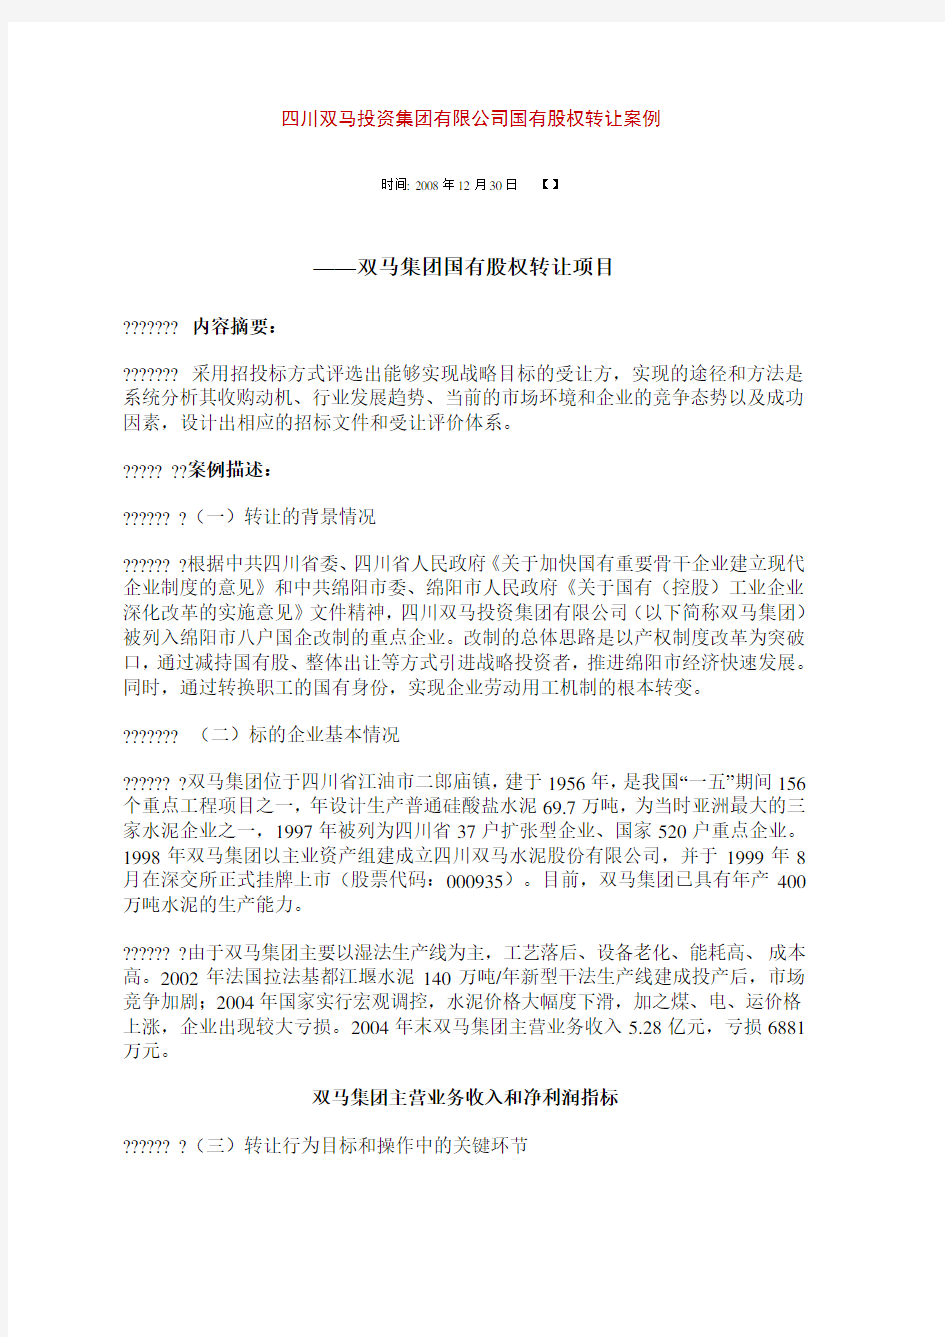 四川双马投资集团有限公司国有股权转让案例